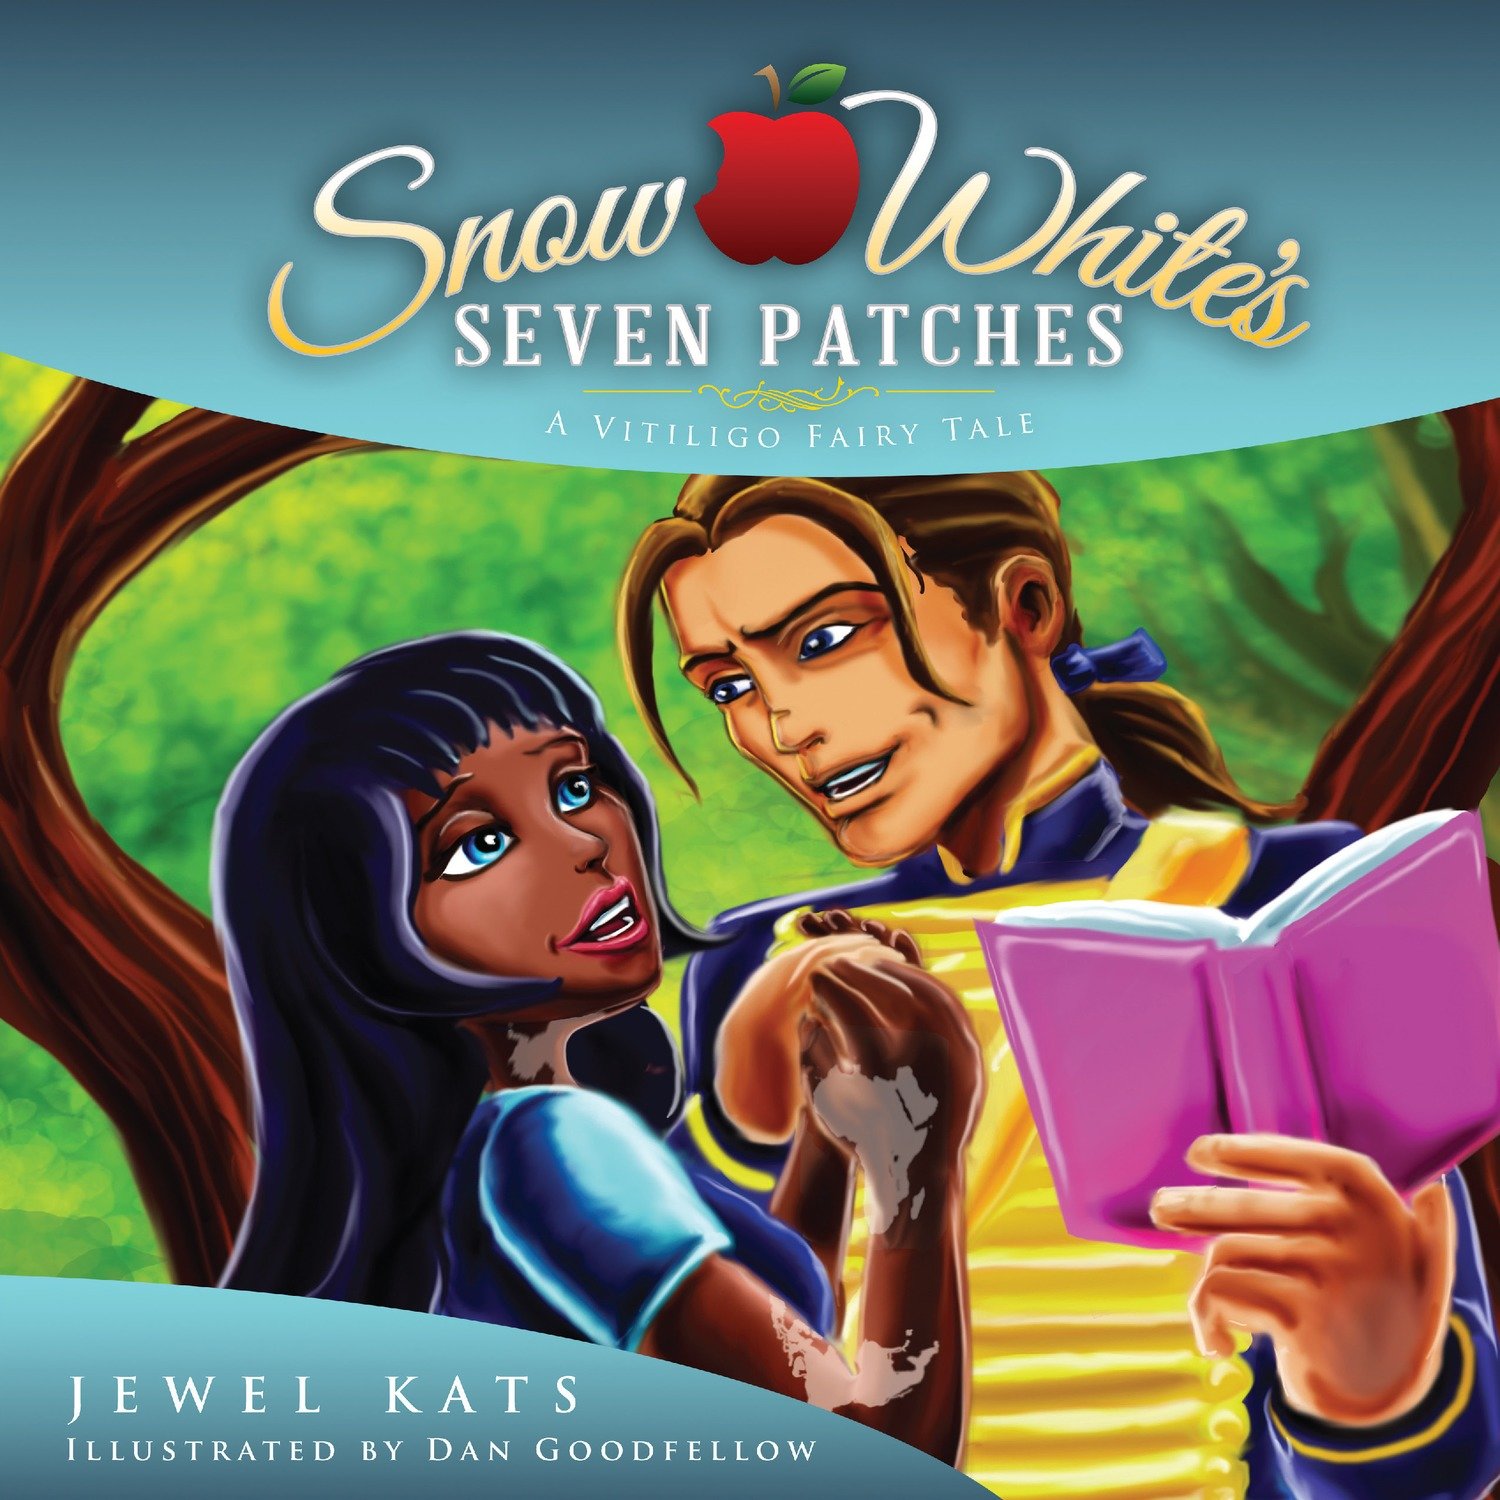 Snow White's Seven Patches: A Vitiligo Fairy Tale